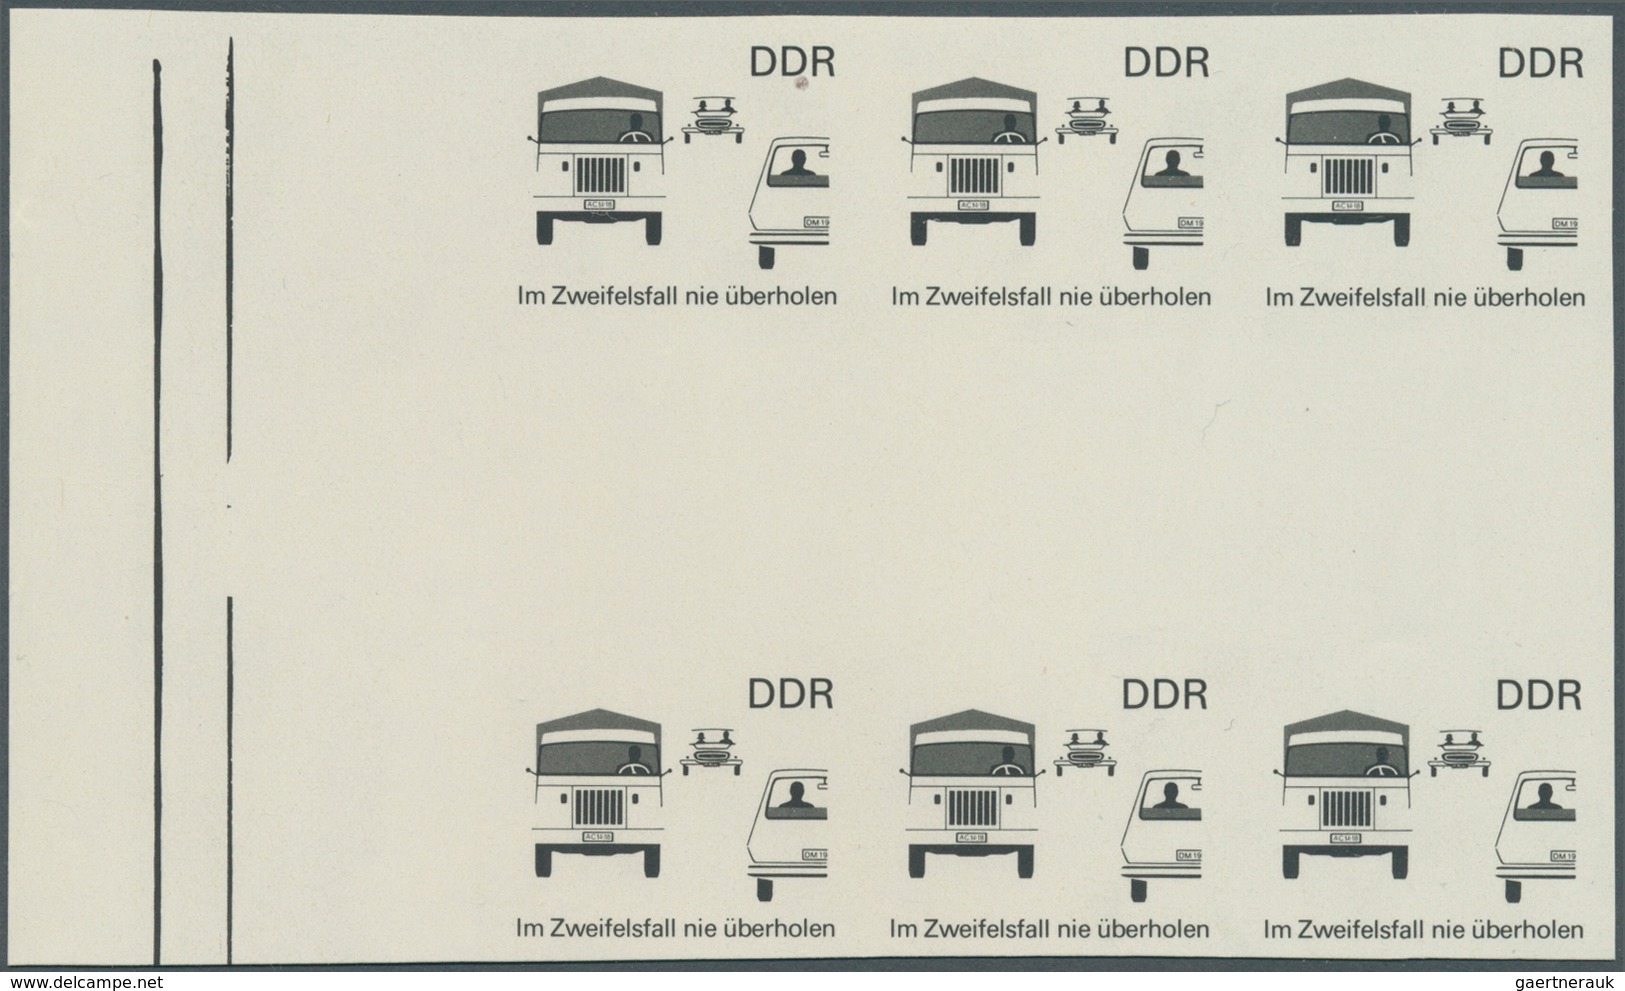 DDR: 1969, Sicherheit im Straßenverkehr 25 Pf. 'Im Zweifelsfall nie überholen' in 5 verschiedenen un